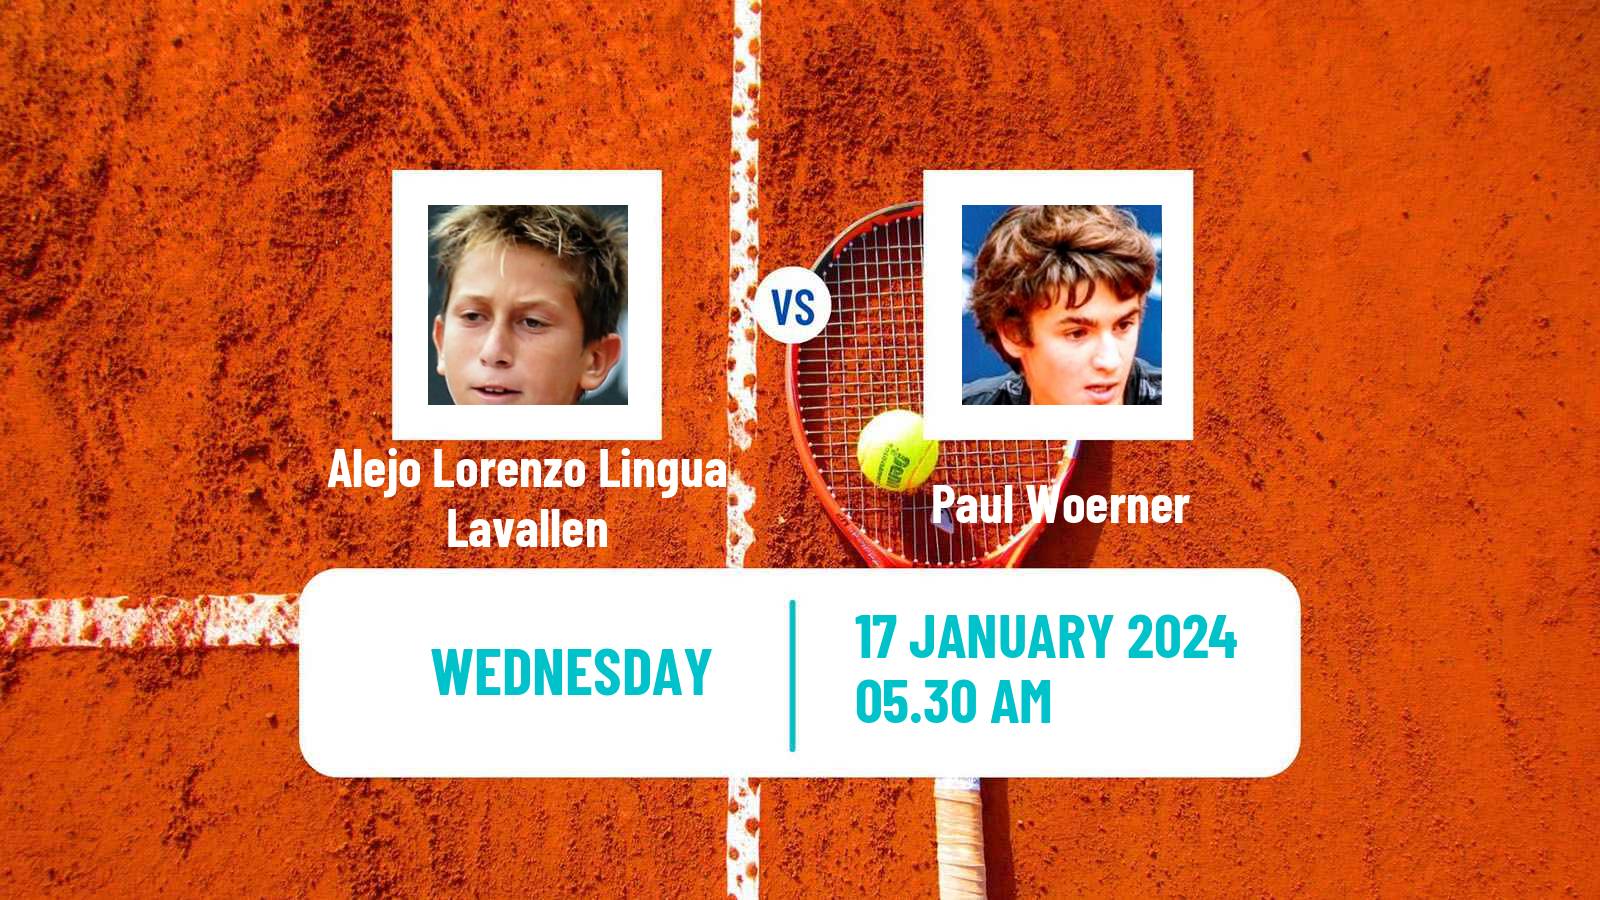 Tennis ITF M15 Antalya 2 Men Alejo Lorenzo Lingua Lavallen - Paul Woerner